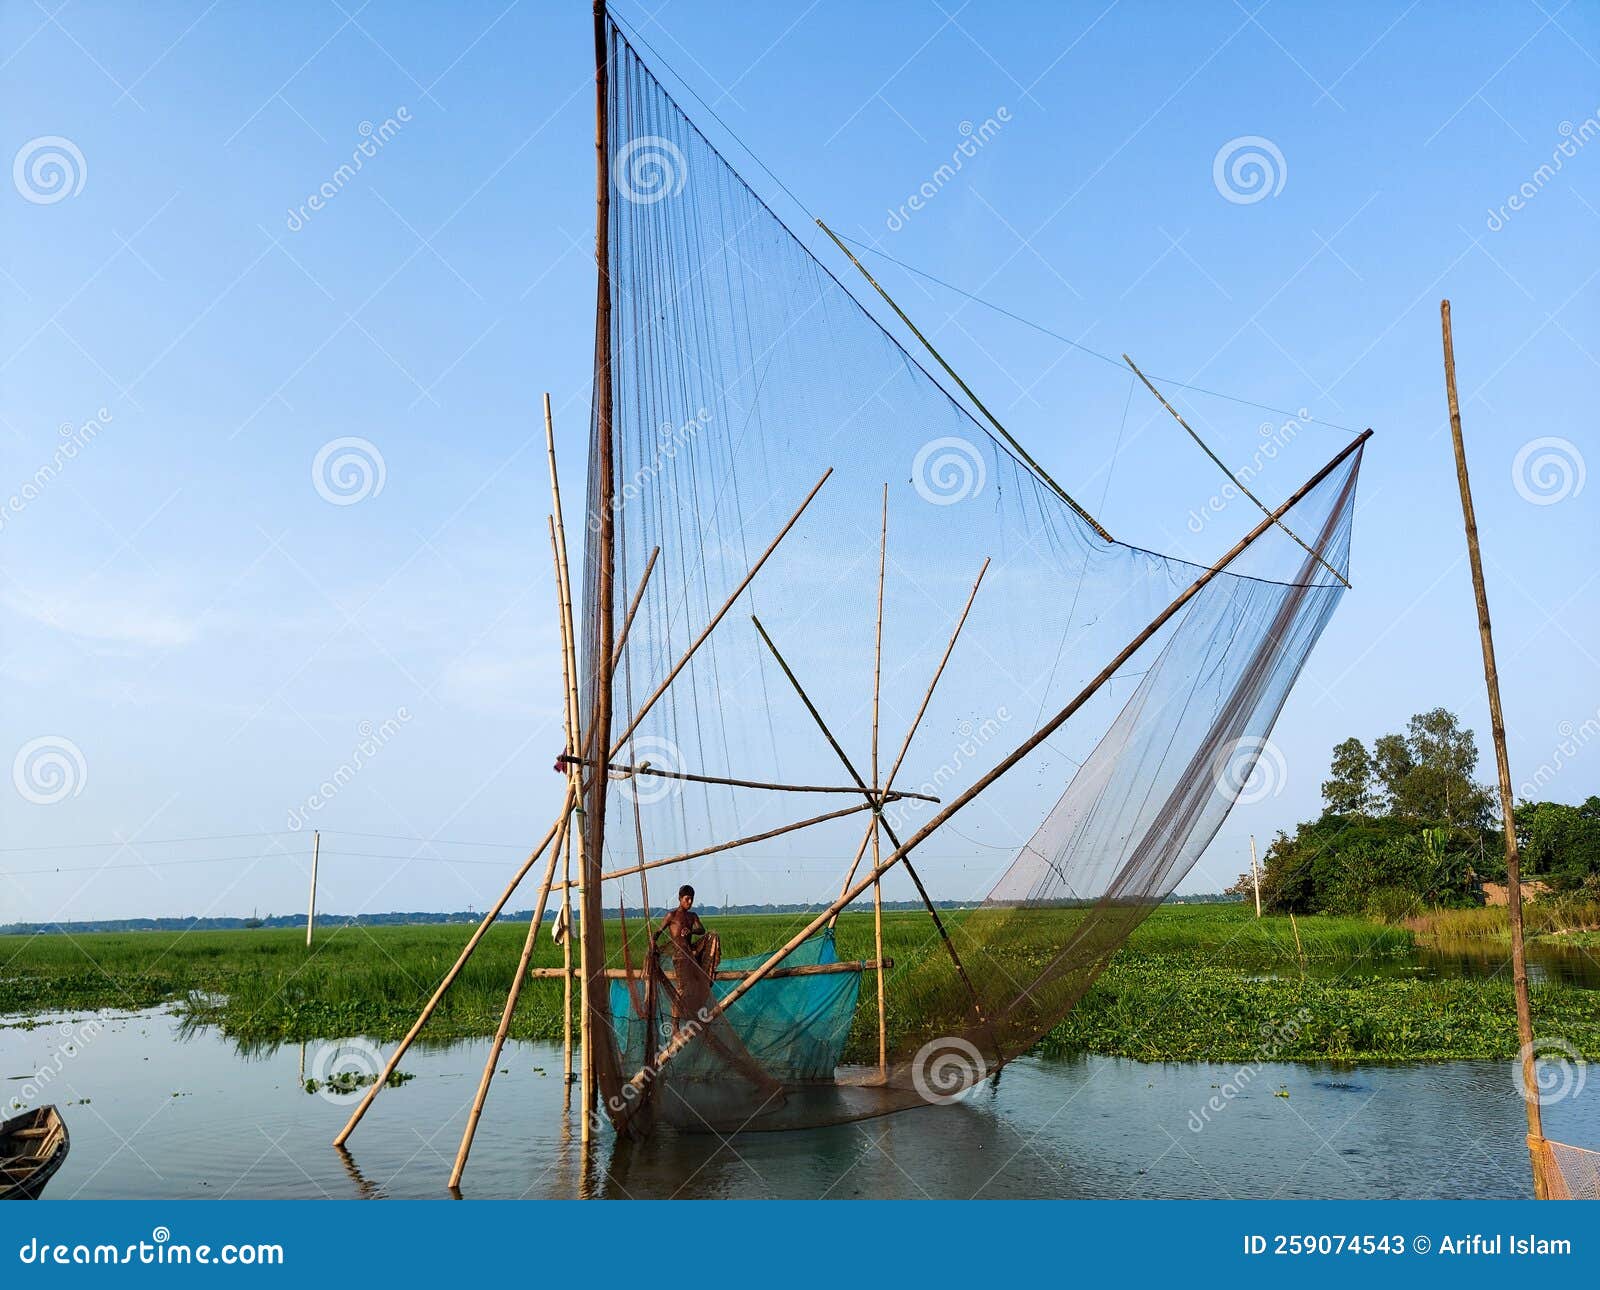 Chinese Fishing Nets or Khora Jal Stock Image - Image of marina